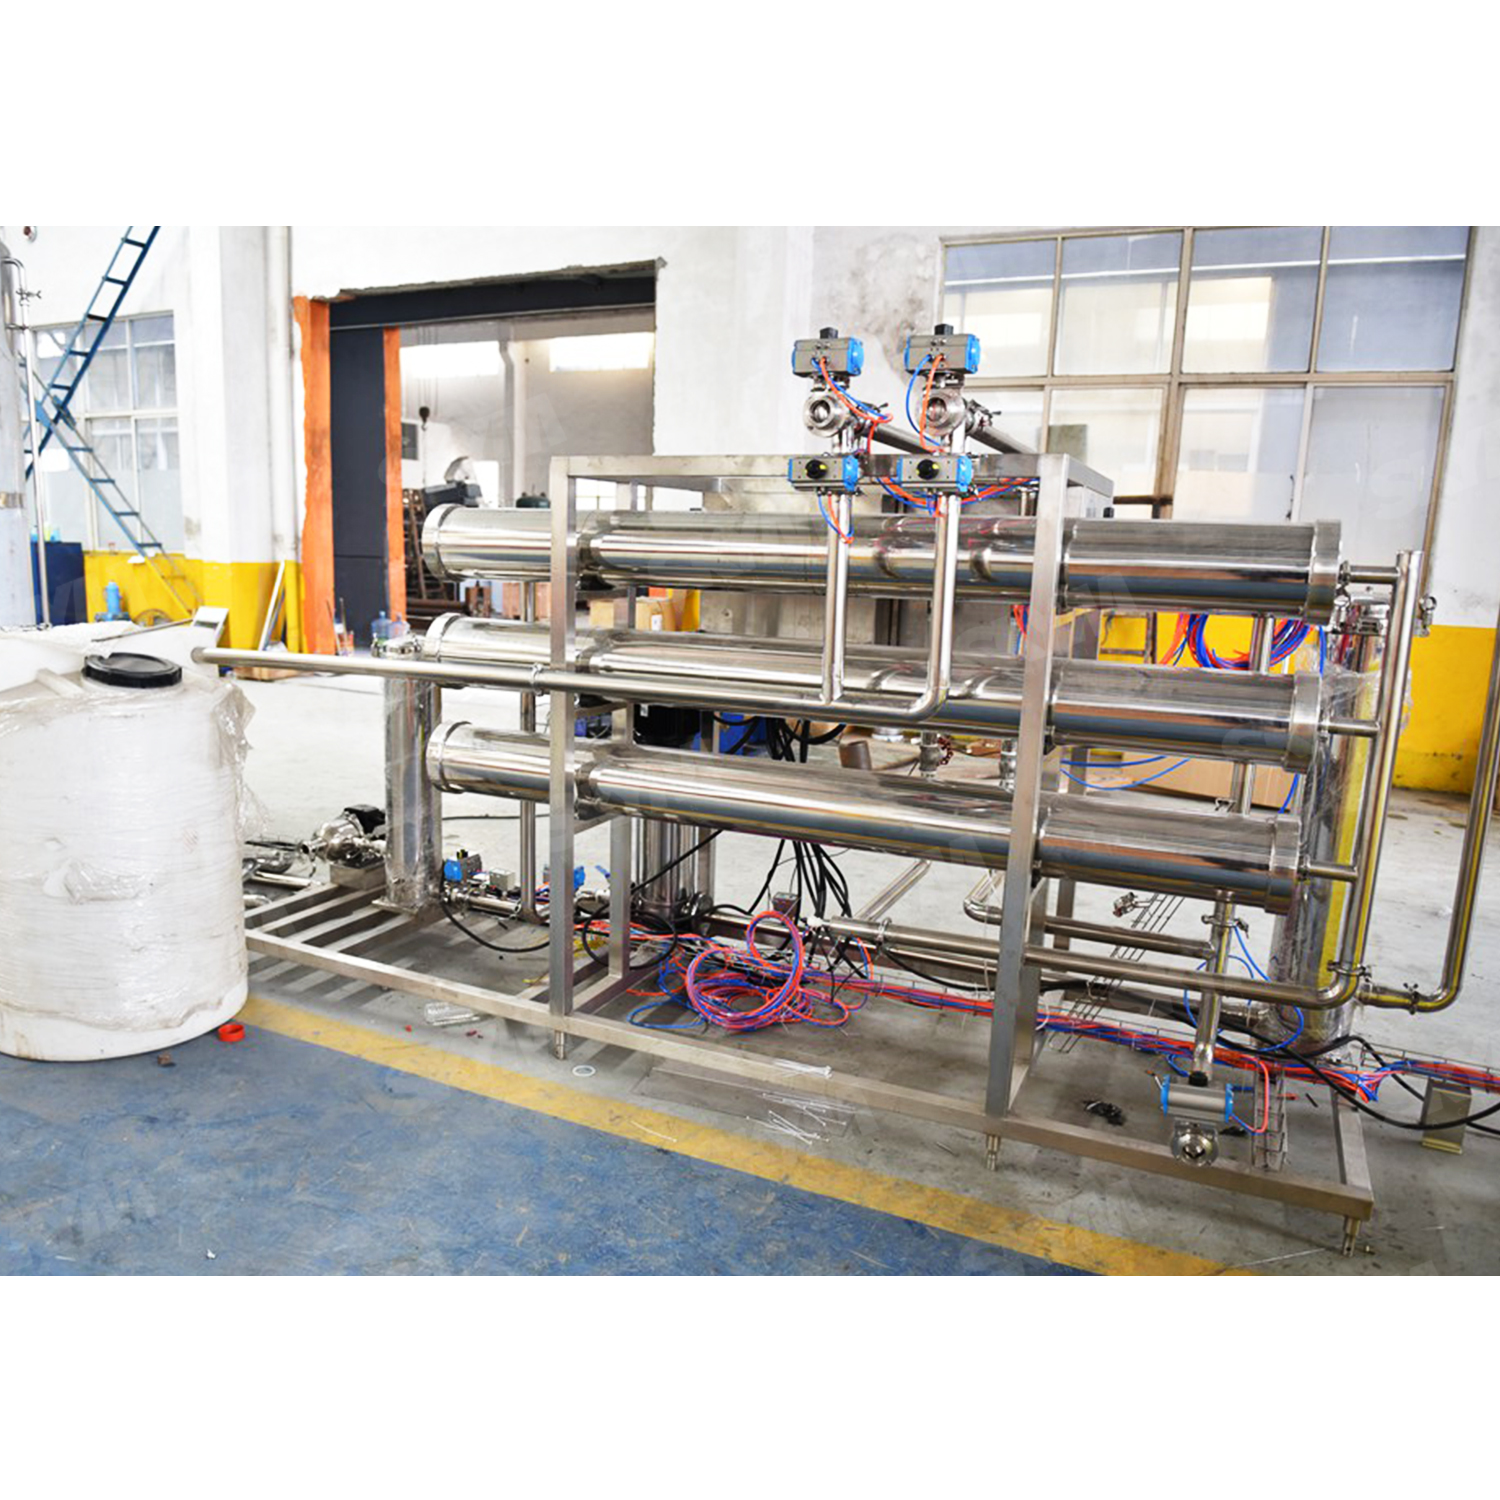 Завод по производству фильтров для питьевой воды обратного осмоса